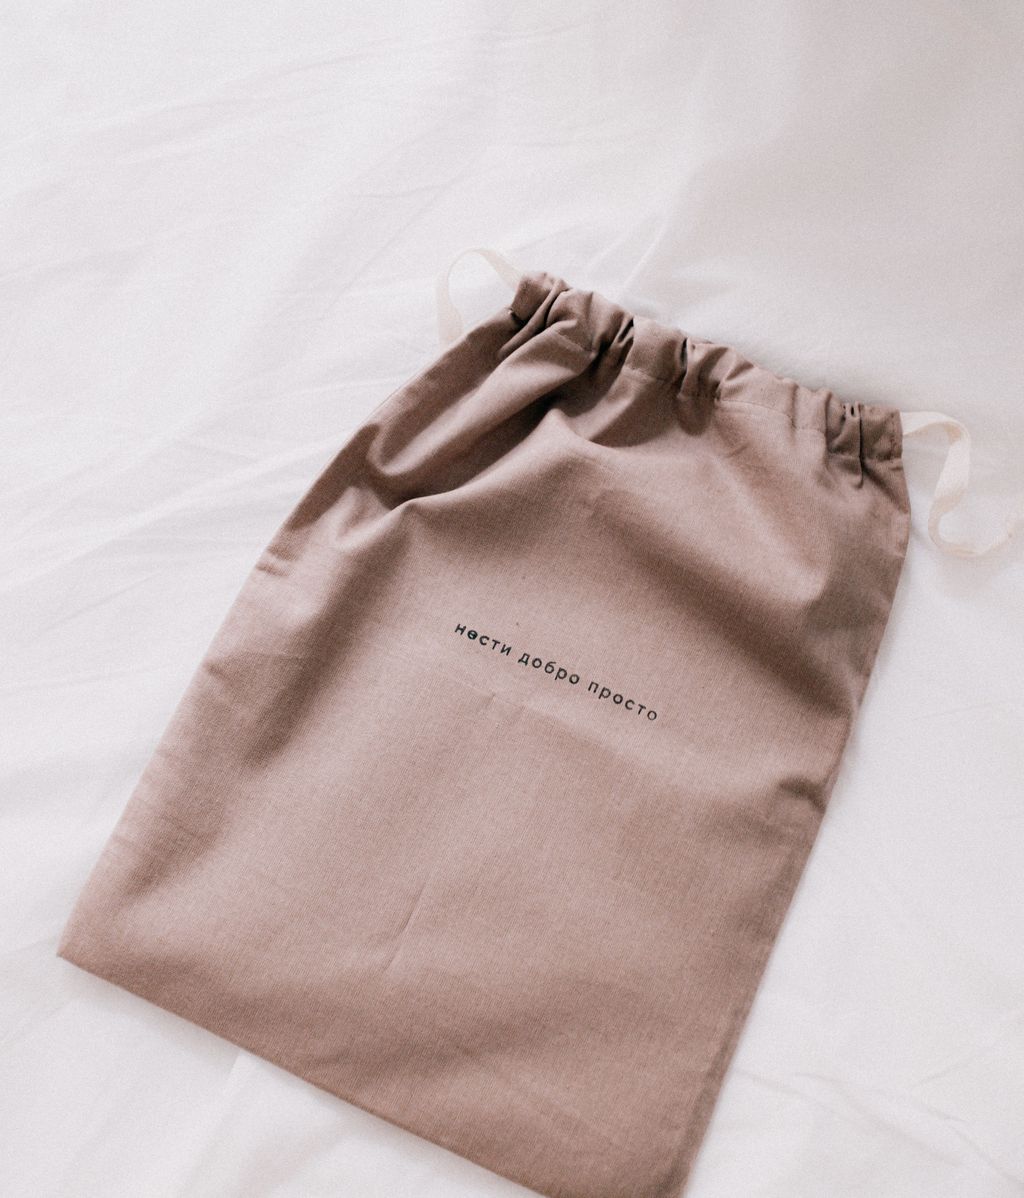 Guarda tus prendas de lino en bolsas de tela. FUENTE: Pexels